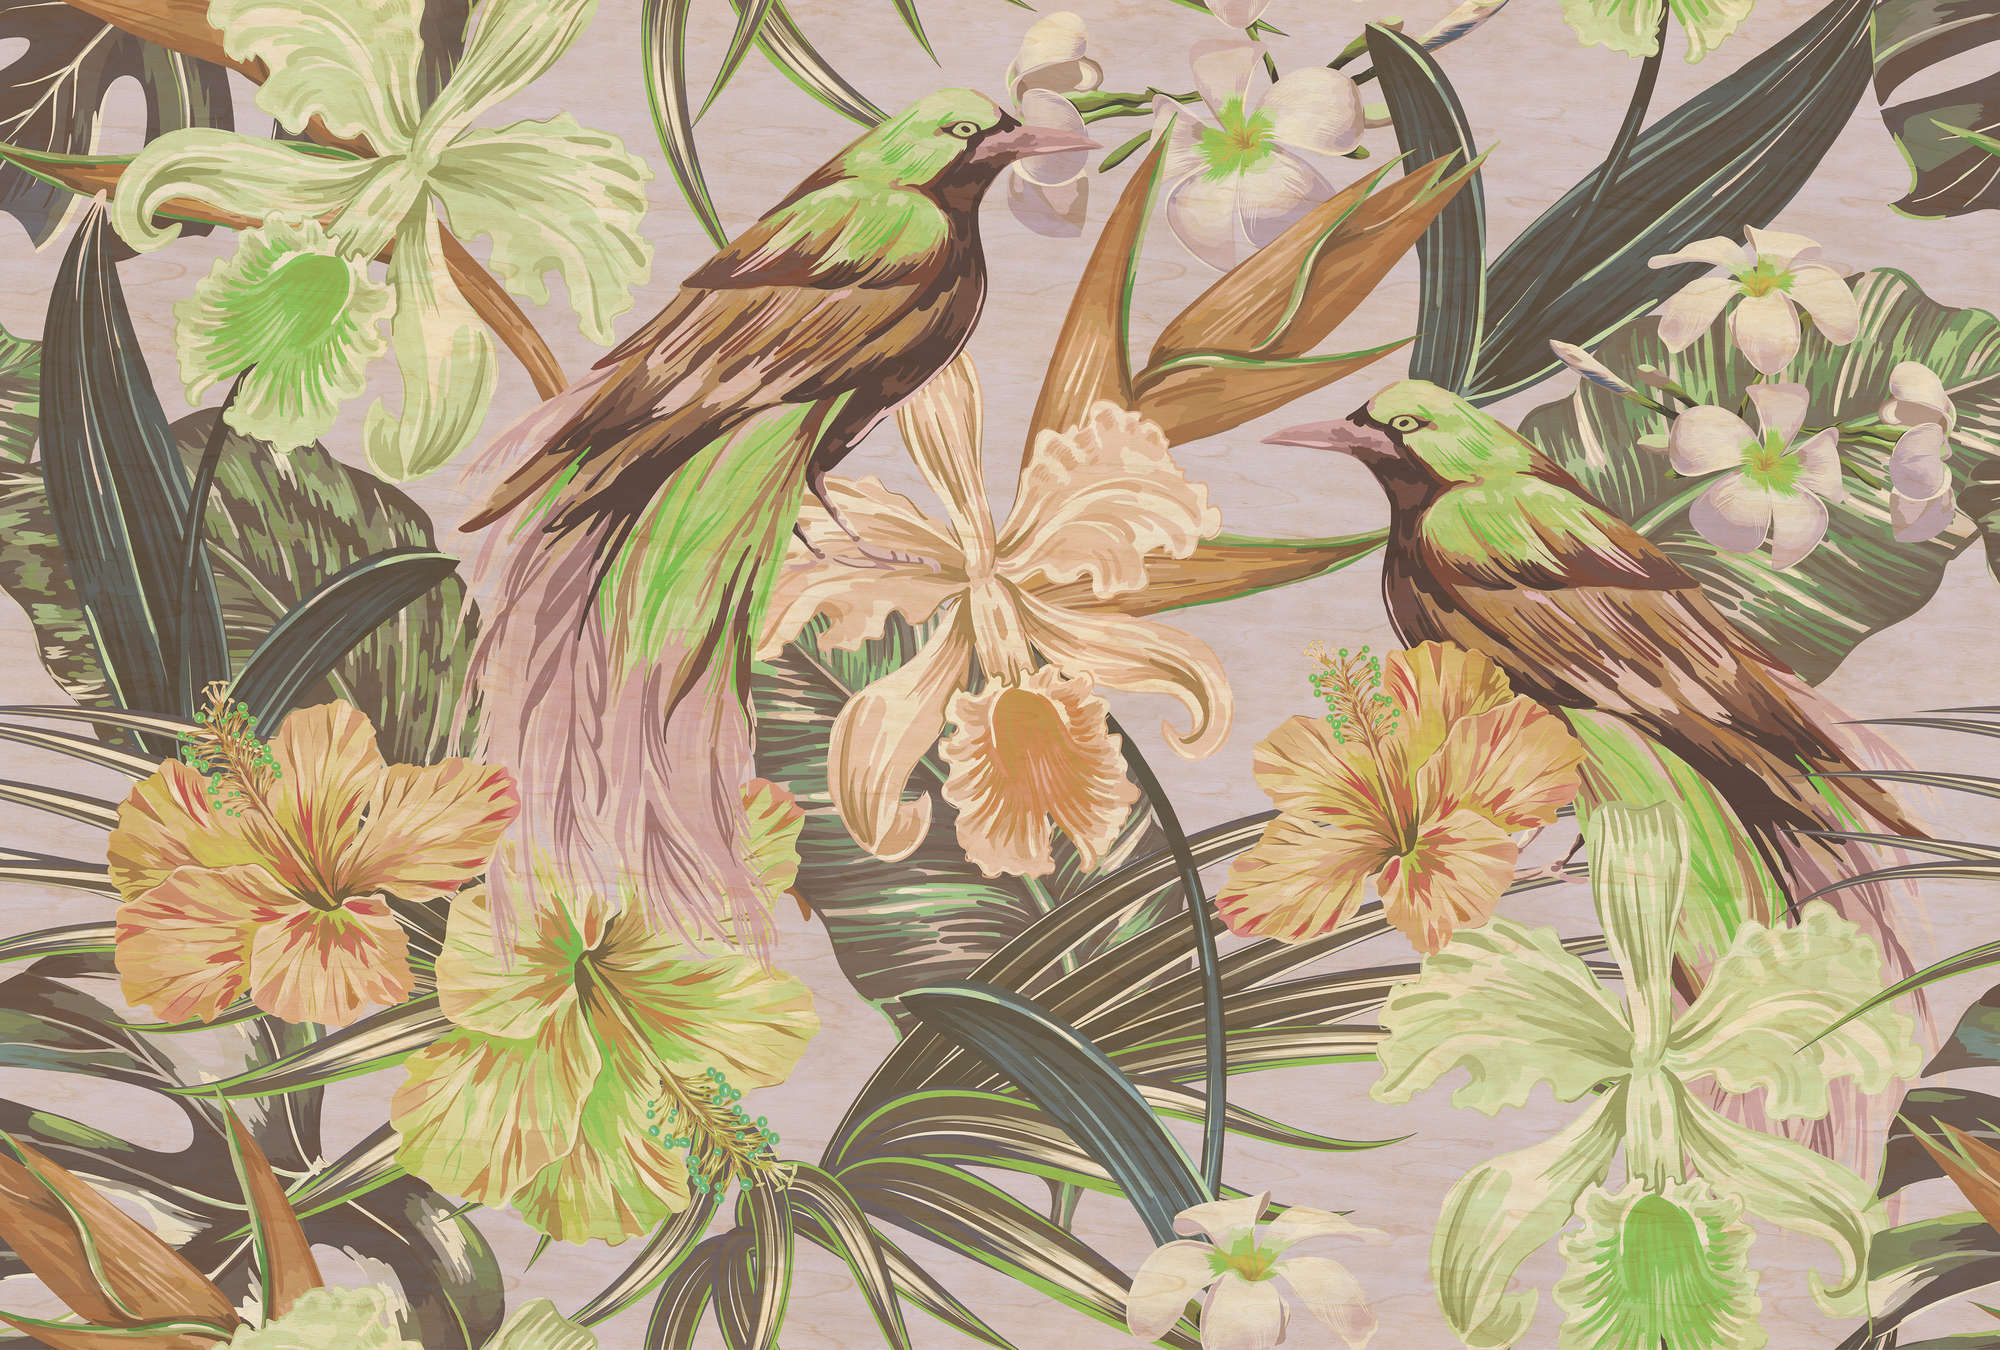             Pájaros exóticos 2 - Fotomural pájaros exóticos y plantas- Textura rayada - Beige, Verde | Vellón liso mate
        